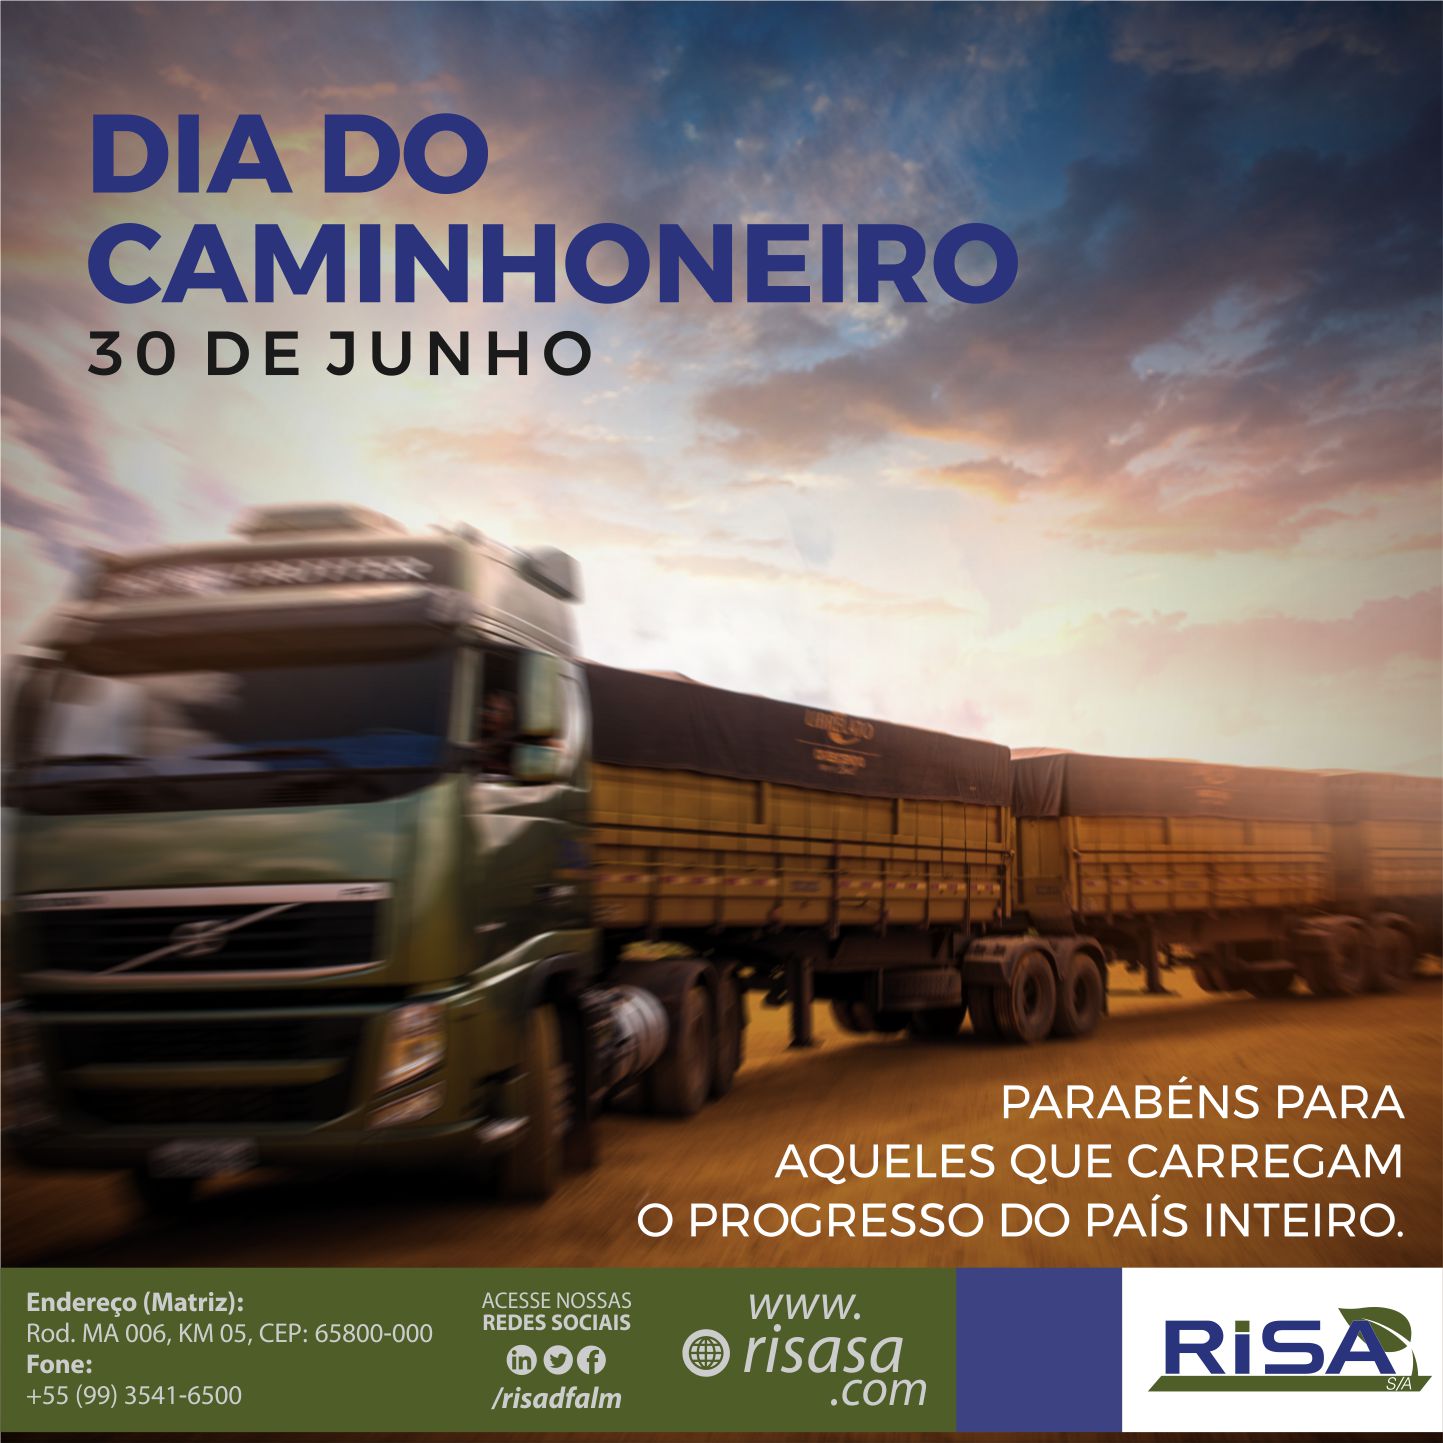 Em comemoração ao Dia do Caminhoneiro, a Risa promove café da manhã nas unidades de Balsas, São Luís e Uruçuí.